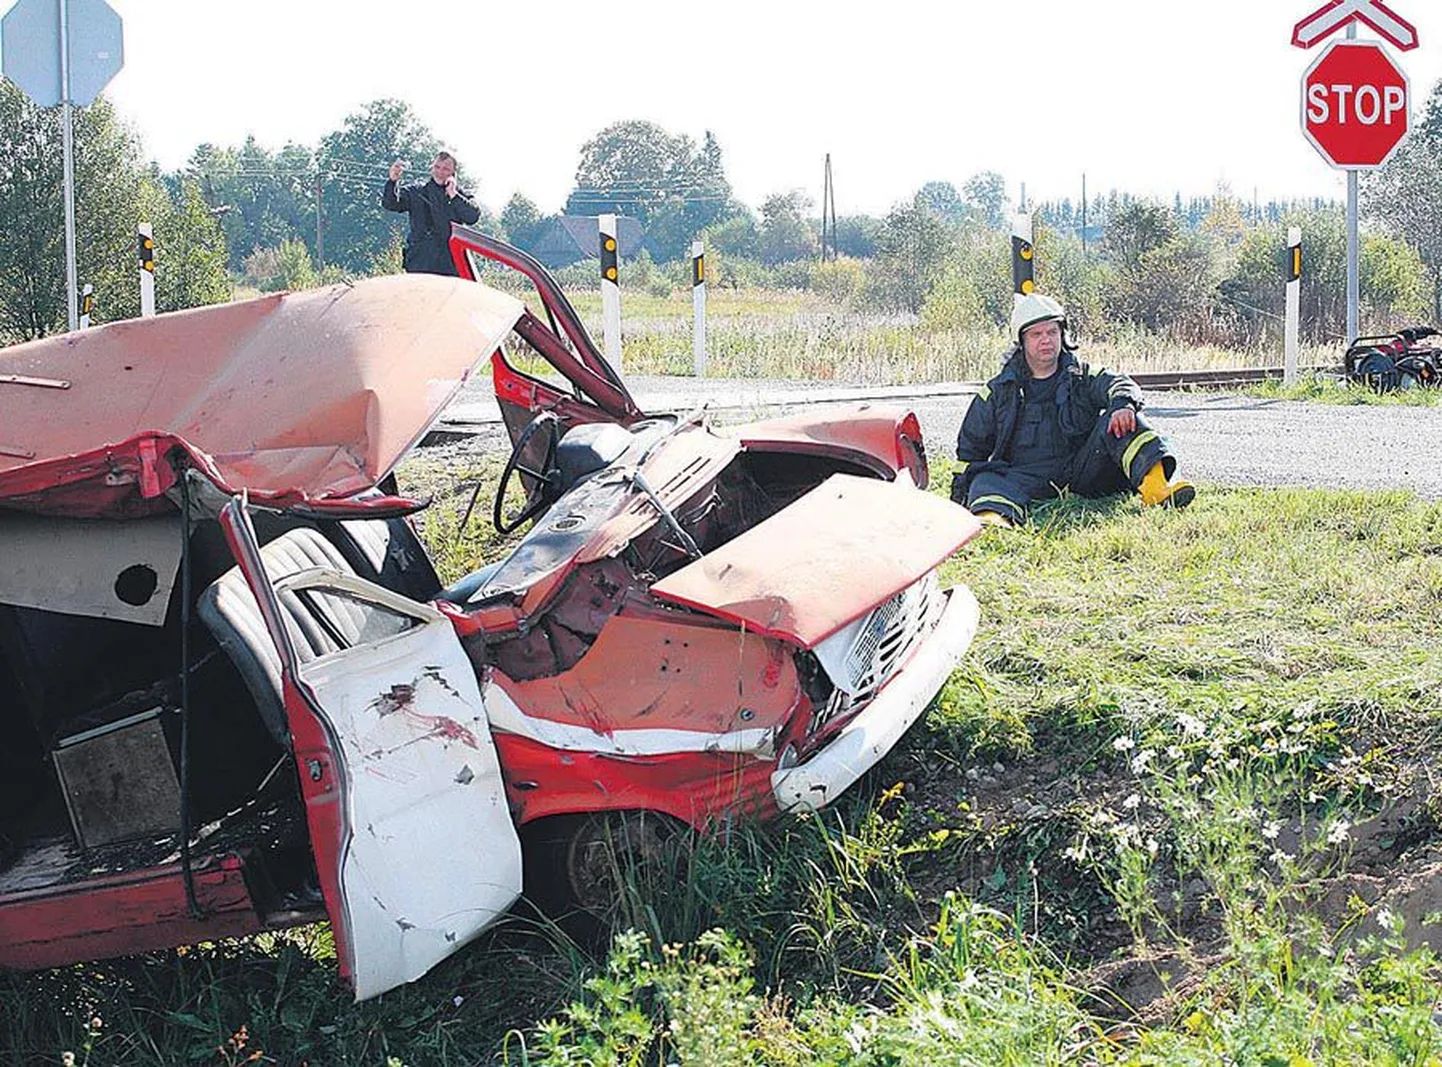 Pärsti raudteeülesõidukoht on üks neist, mis saab Türi—Viljandi raudteelõigu uuendamise käigus valgusfoori. Pilt on tehtud 2008. aastal, mil seal korraldati päästeõppus. Neli aastat varem juhtus sealsamas ühe hukkunuga liiklusõnnetus.